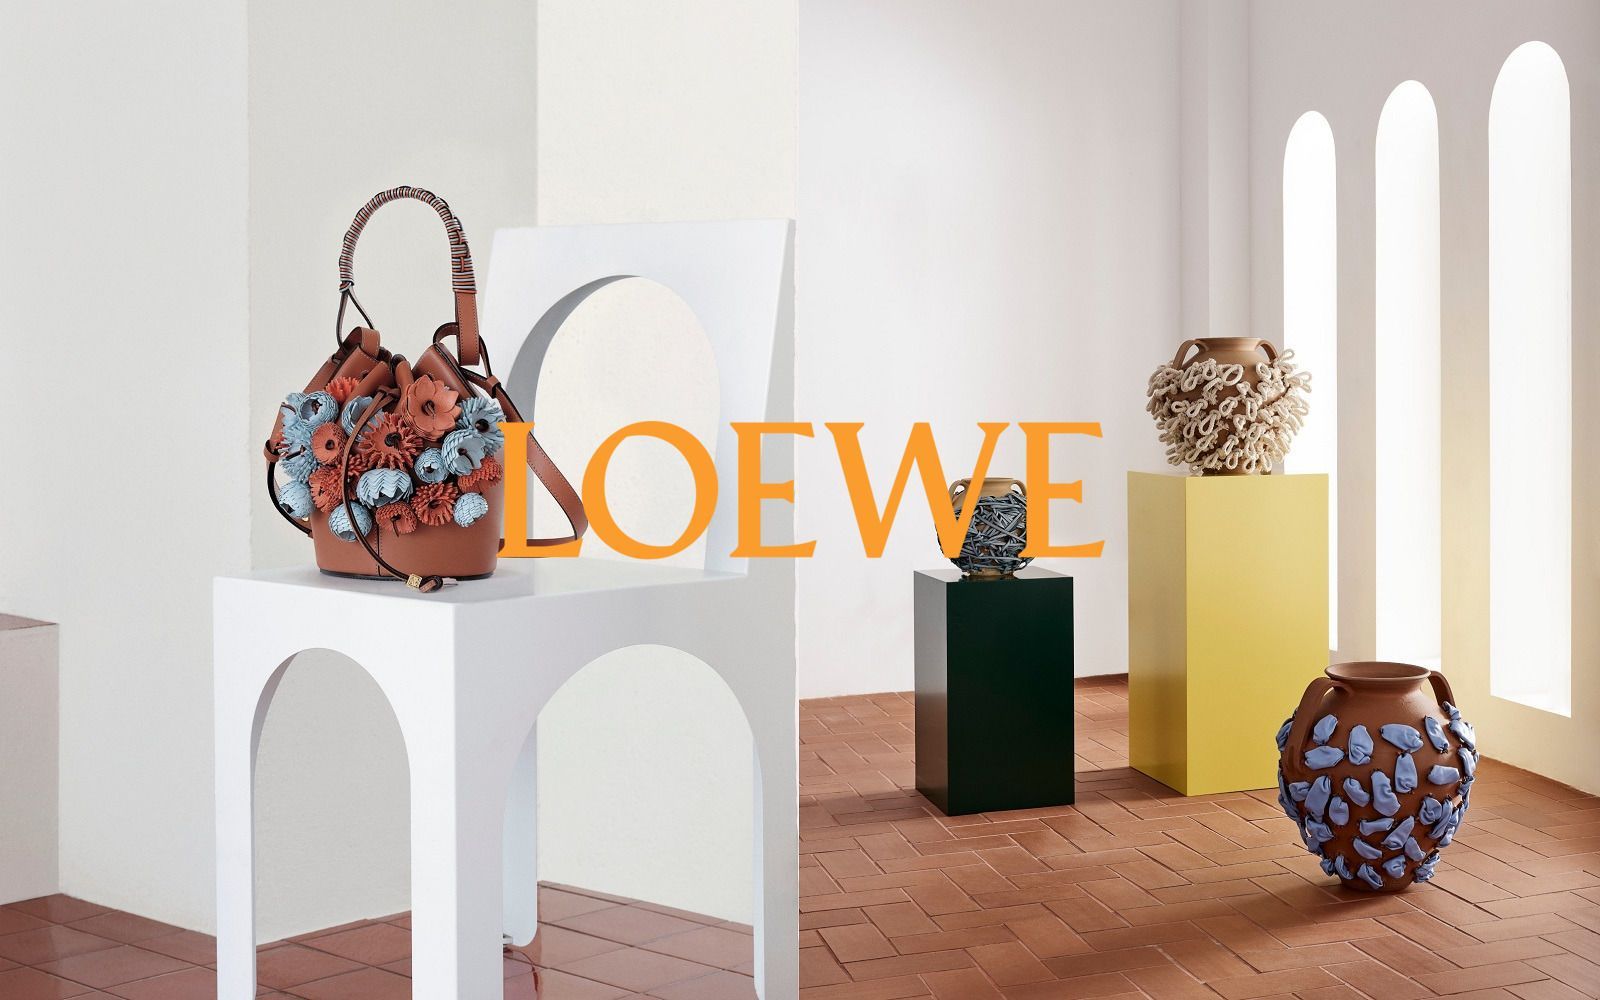 Loewe exhibition explores basket making in Milan